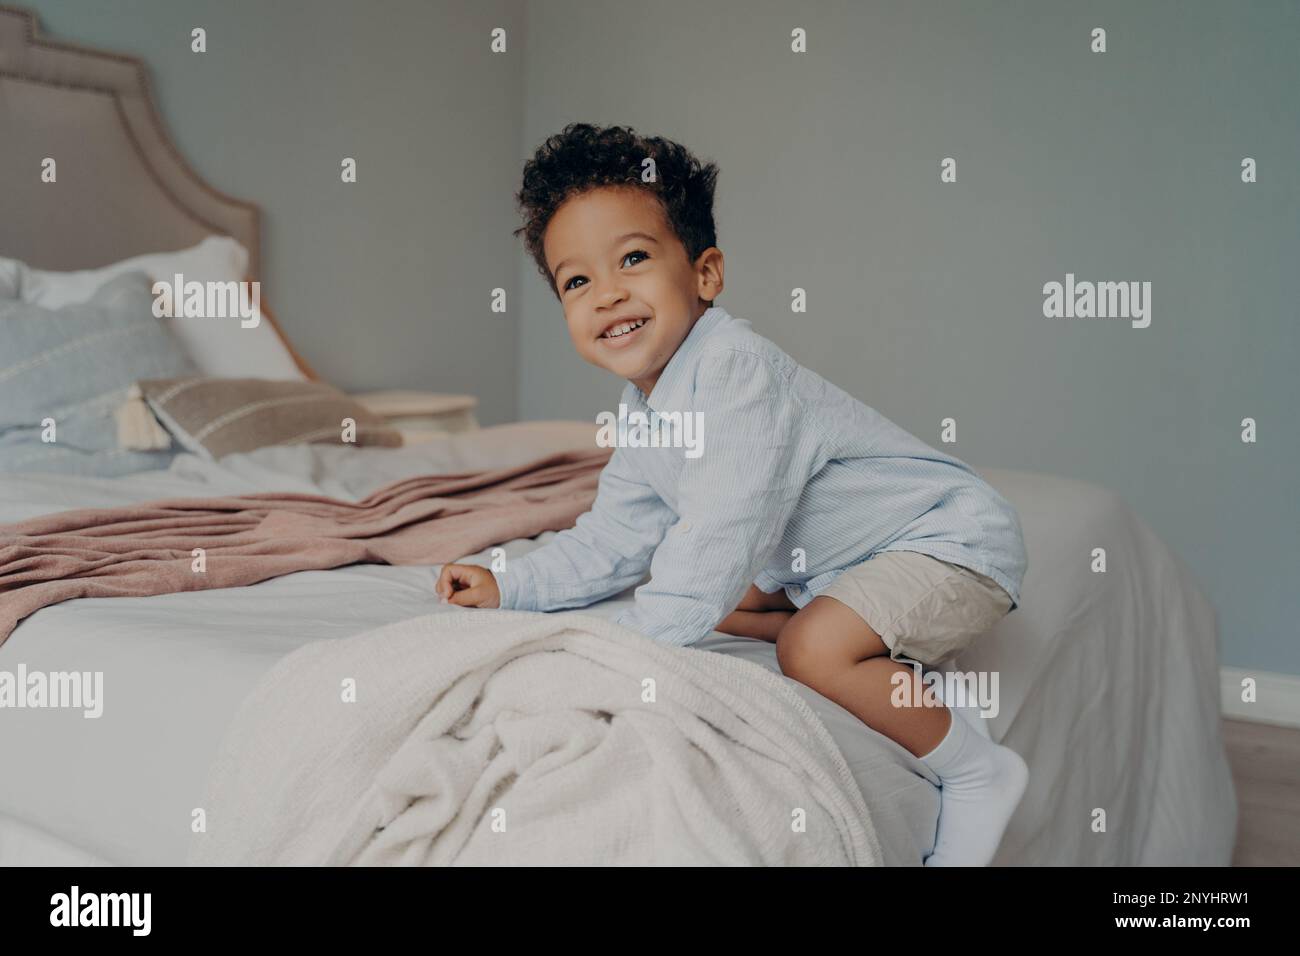 Süßer, glücklicher afroamerikanischer Junge, der spielt und Spaß auf dem Bett hat, nachdem er aus dem Kindergarten nach Hause gekommen ist, spielt und lächelt, während er Zeit im Bett verbringt Stockfoto